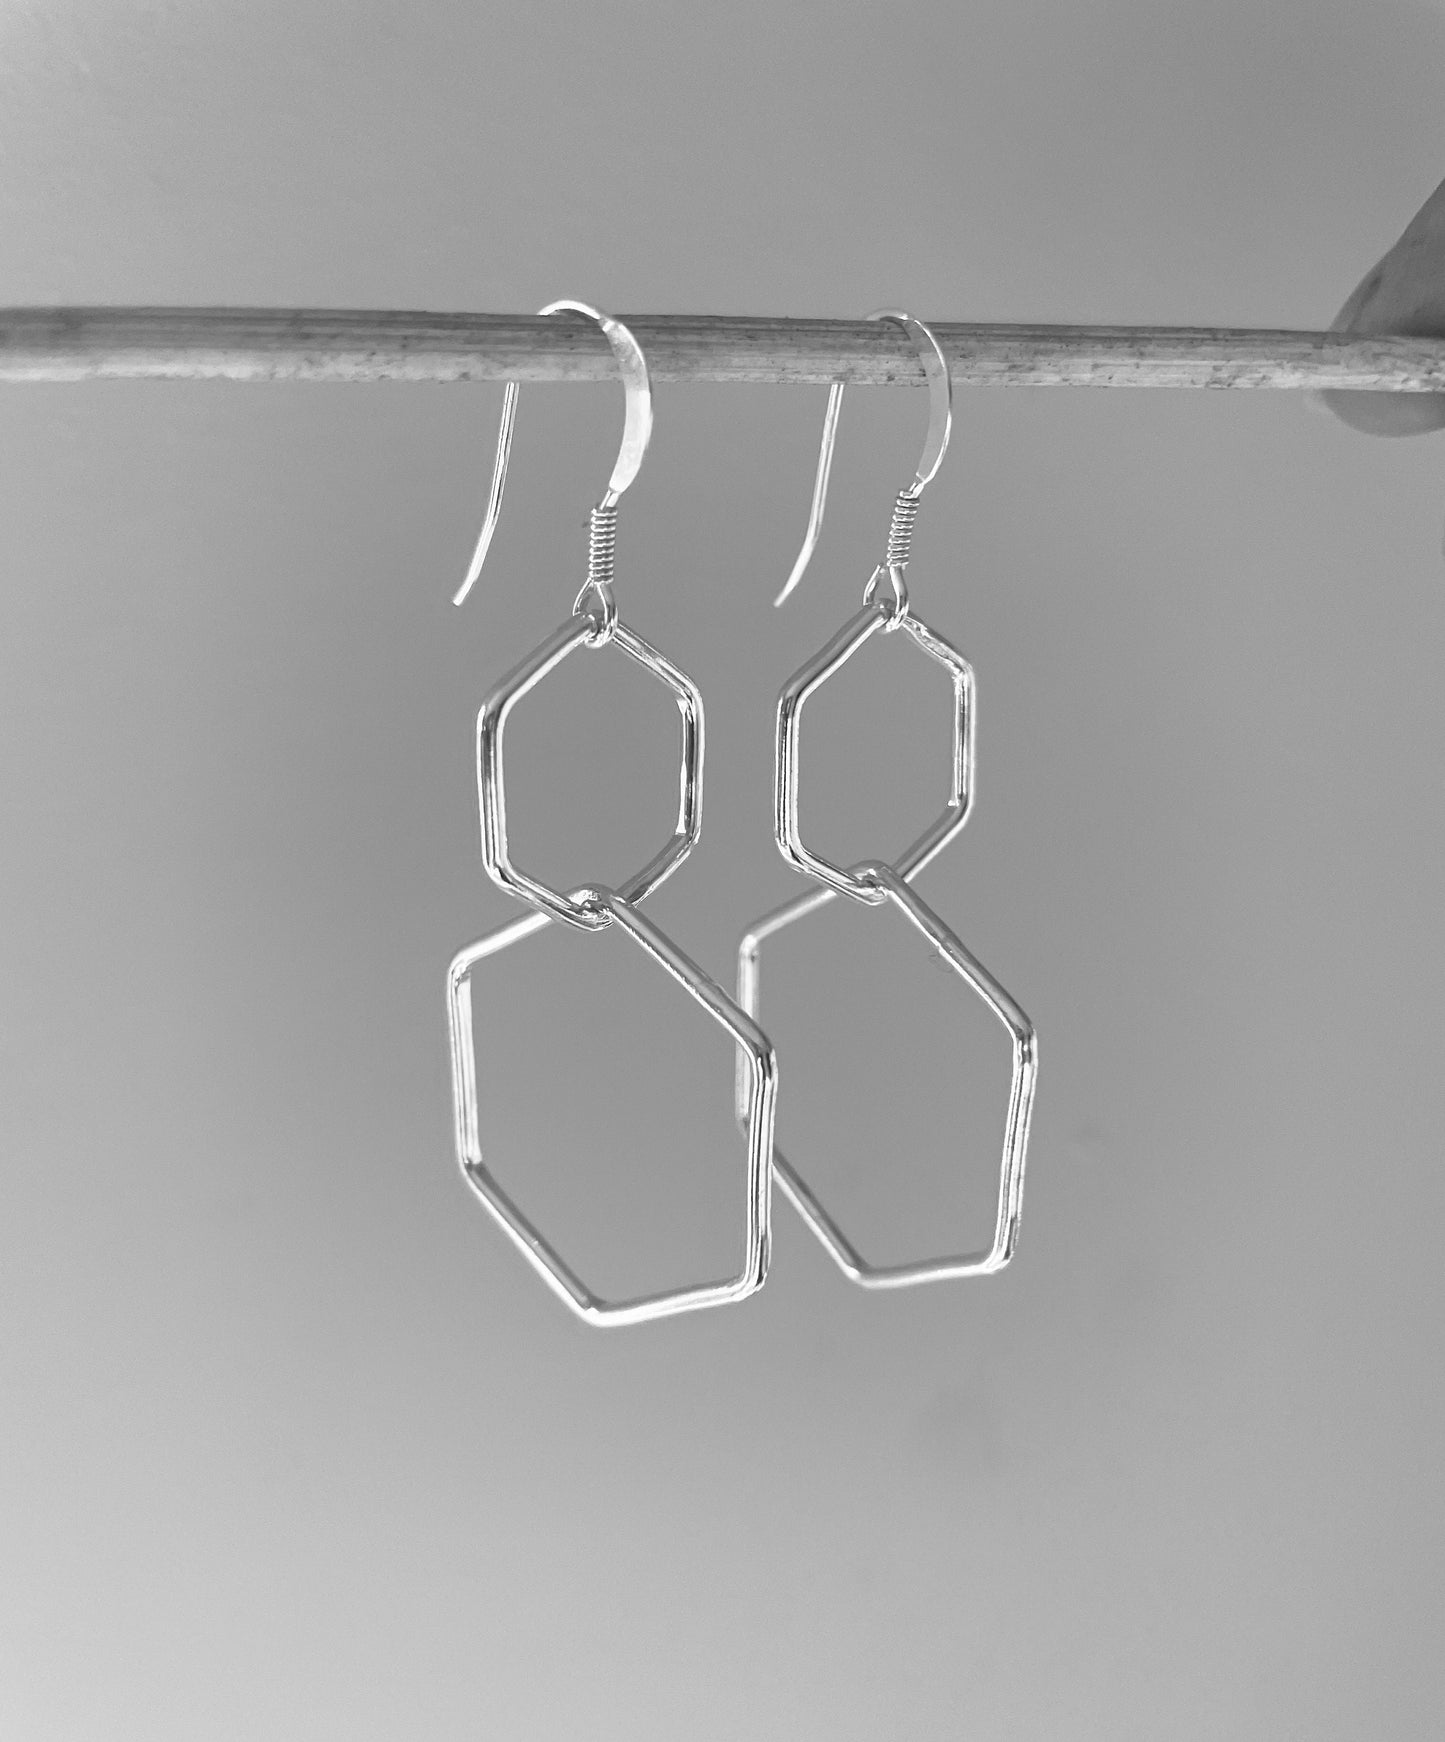 Large silver hexagon earrings, large geometric earrings